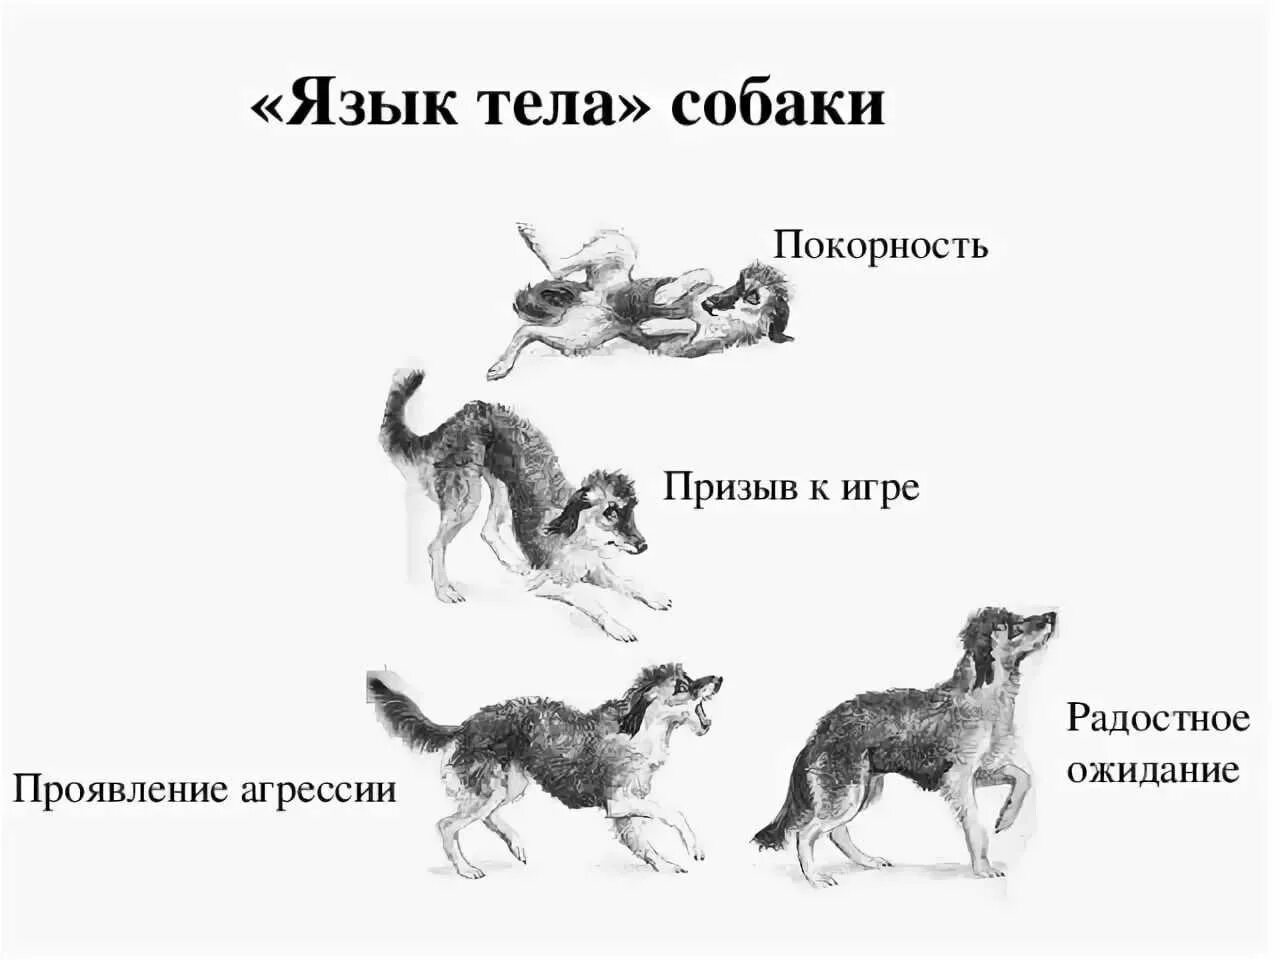 Поведение собак. Язык тела собаки в картинках. Араедение собак. Виды поведения собак. Собаки разом поднялись и с лаем